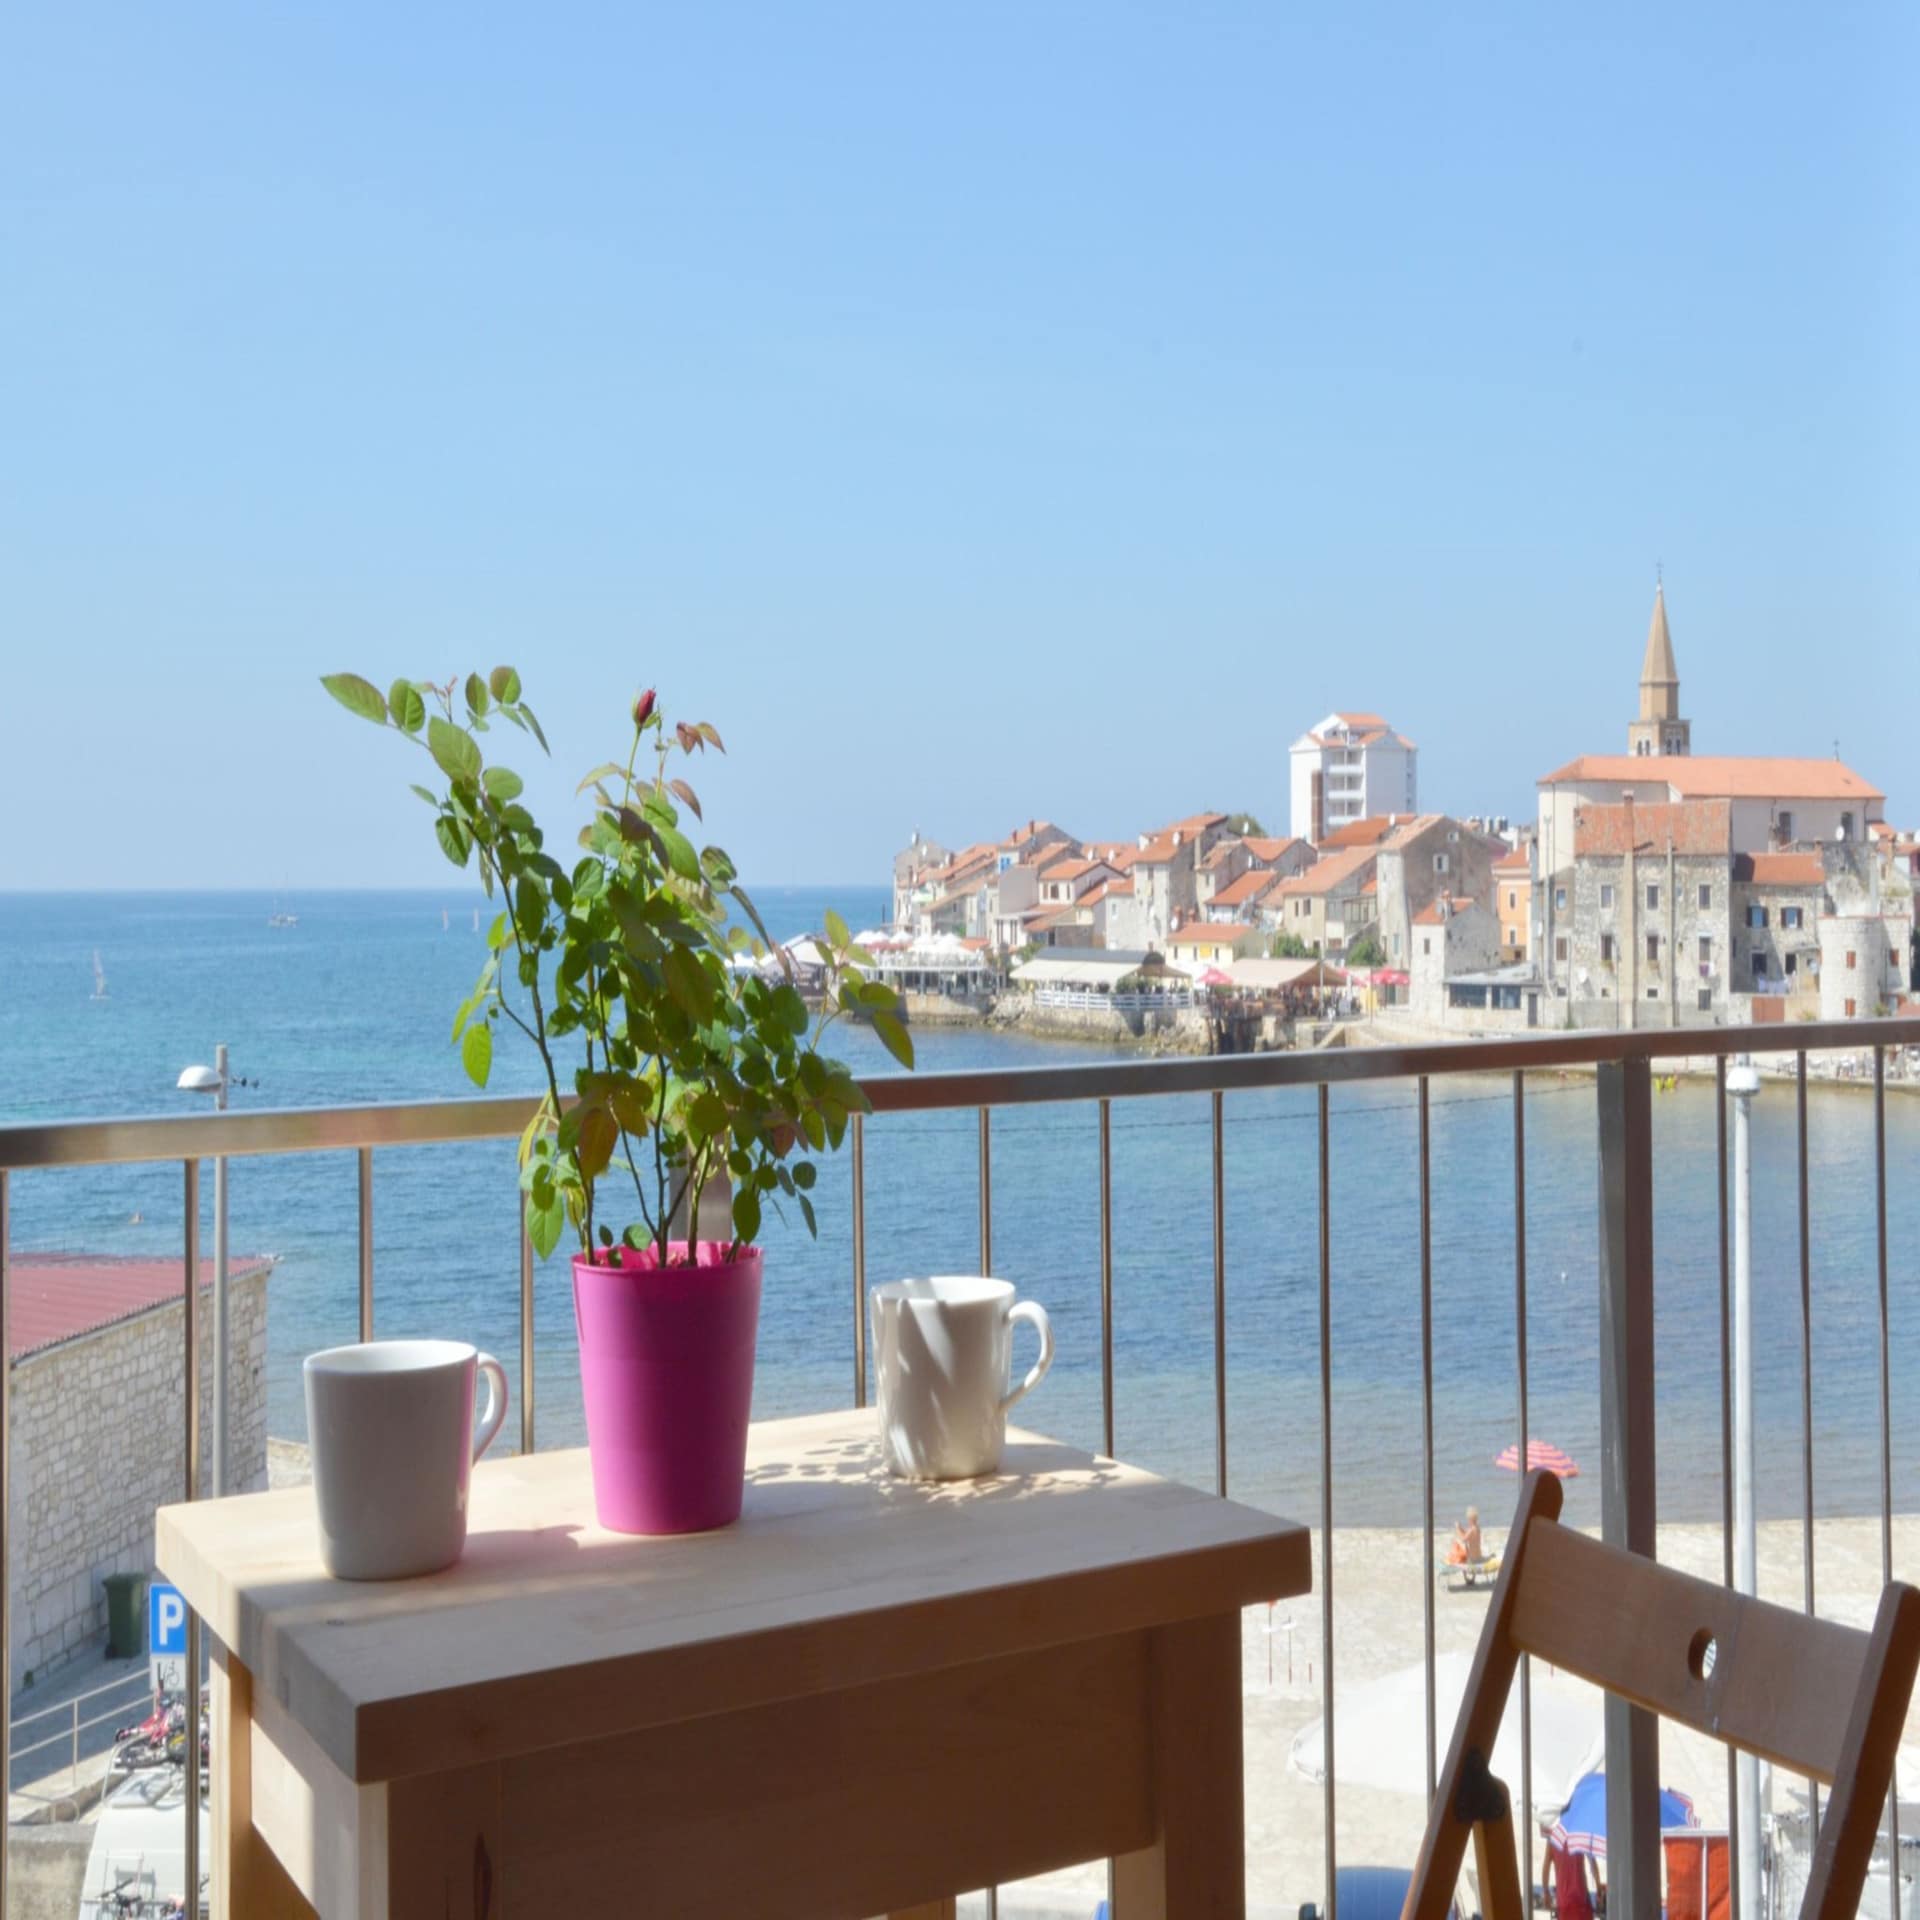 Balkon mit kleinem Tisch, 2 Kaffeetassen und 1 Pflanze sowie Blick auf das Meer und Umag.